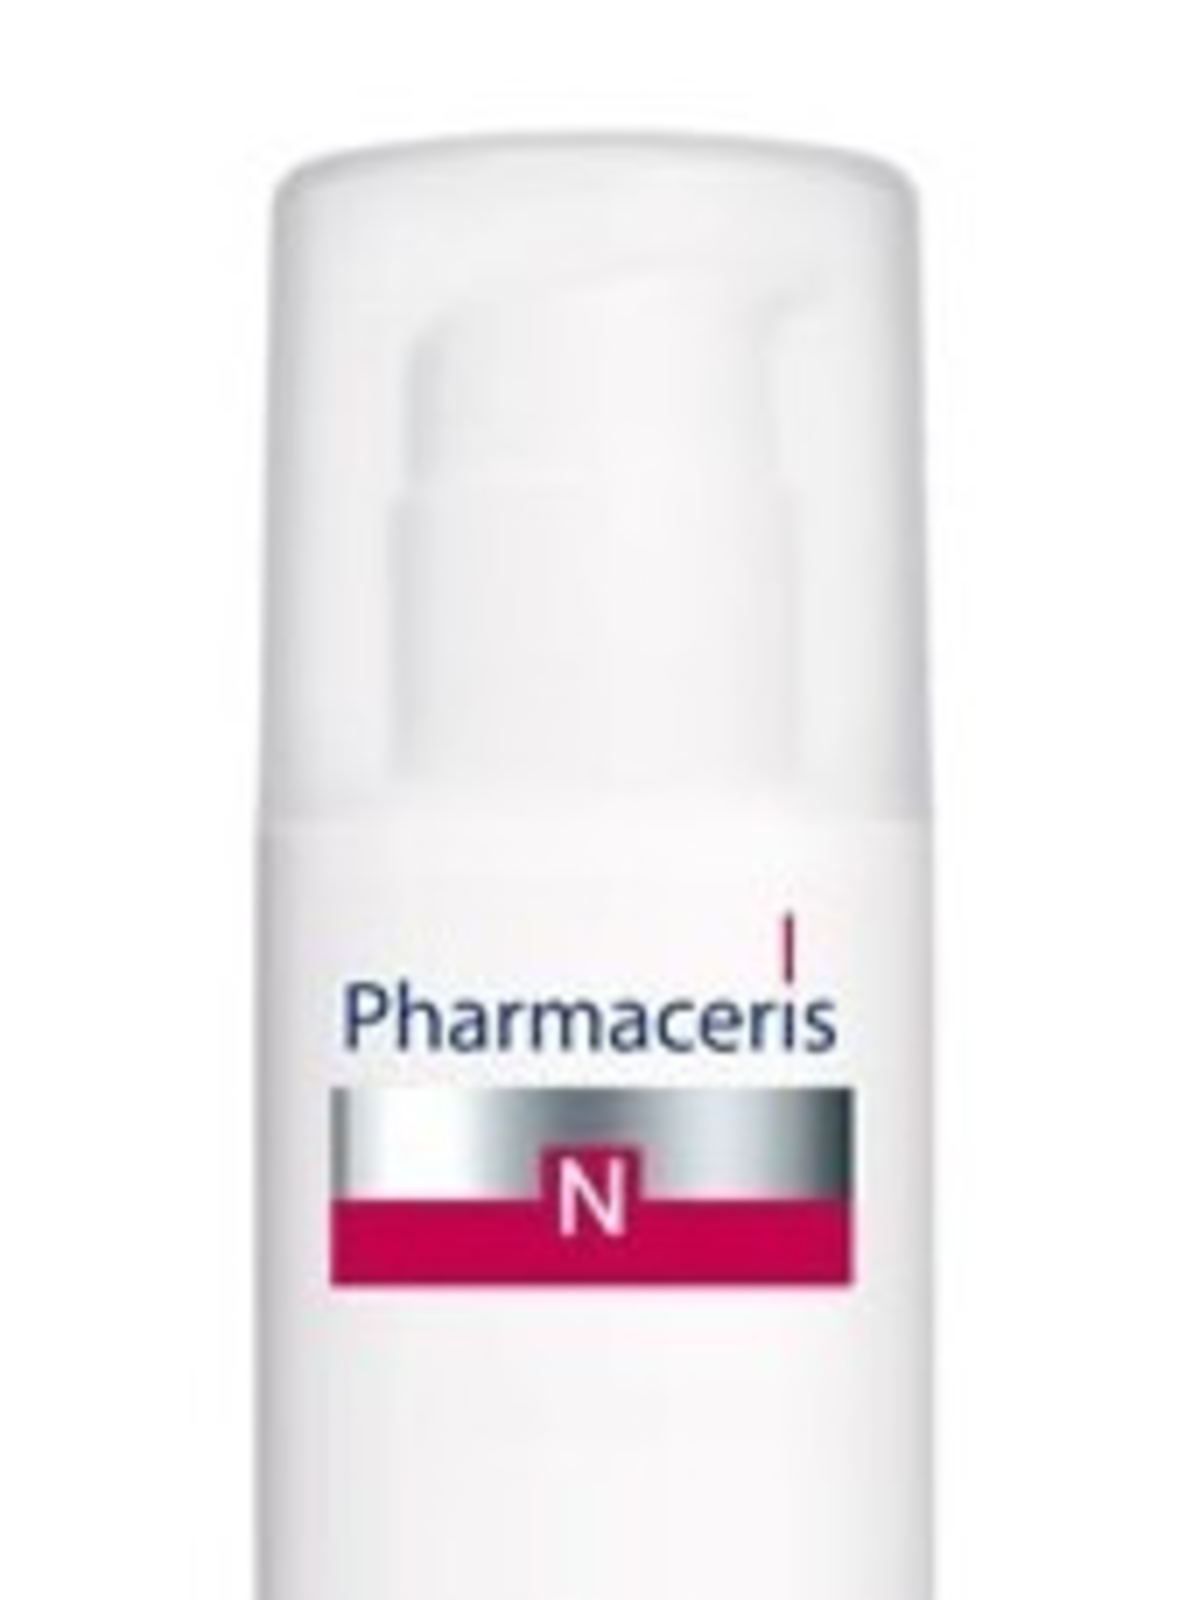 Pharmaceris N, Nutri - Capilaril, Intensywny krem odżywczy do twarzy do cery naczynkowej